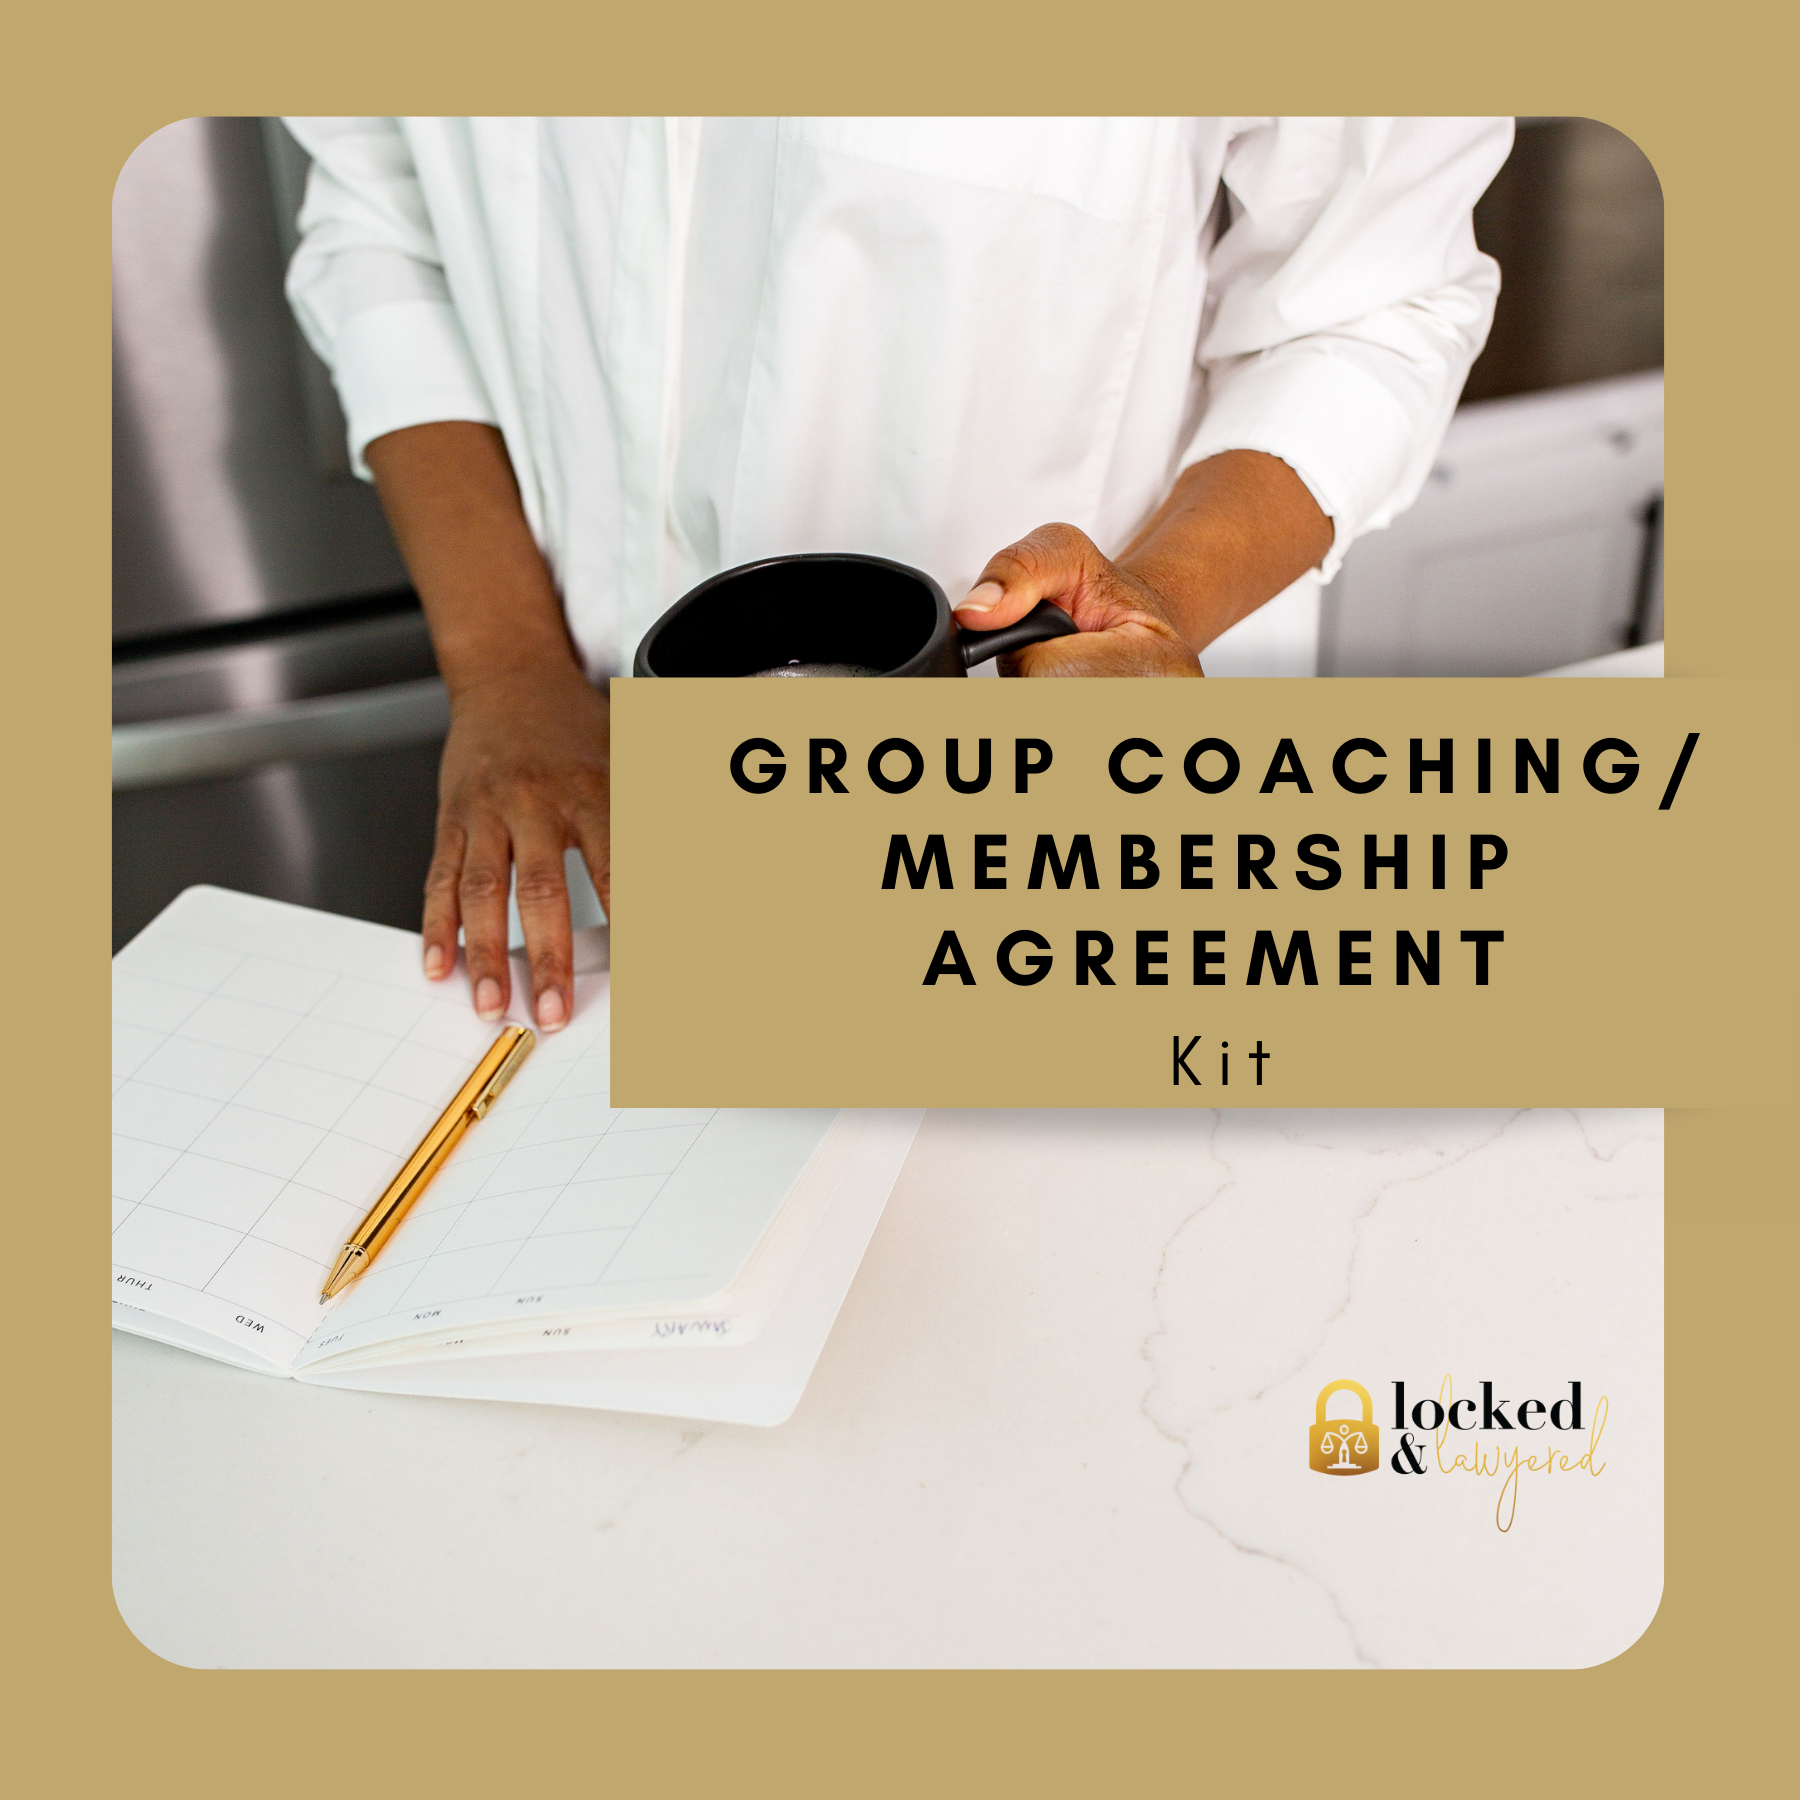 Group Coaching/Membership Agreement Kit